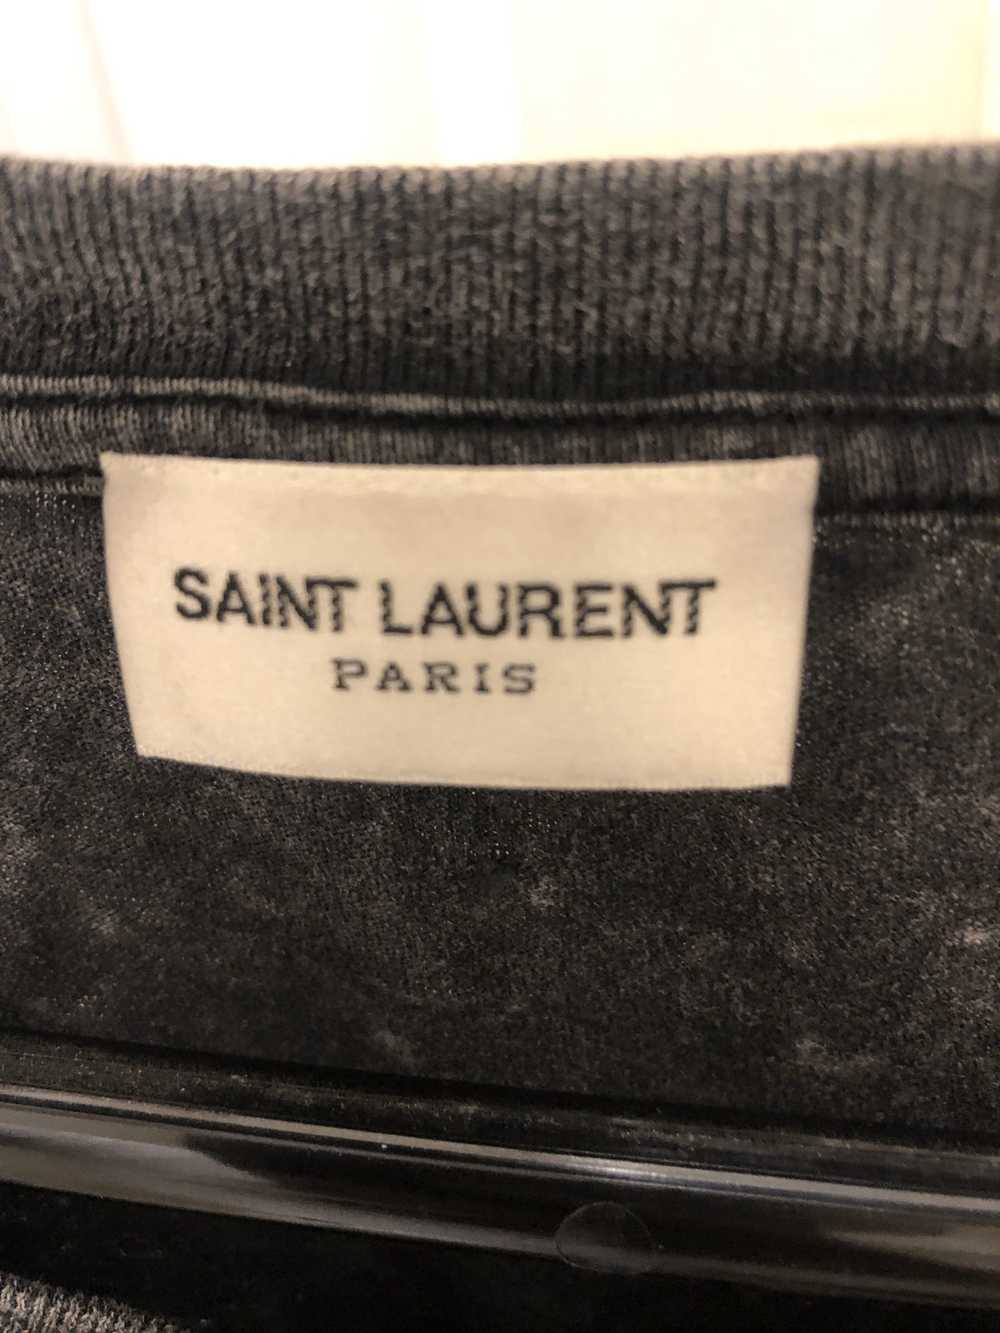 Saint Laurent Paris Yale shirt - image 2